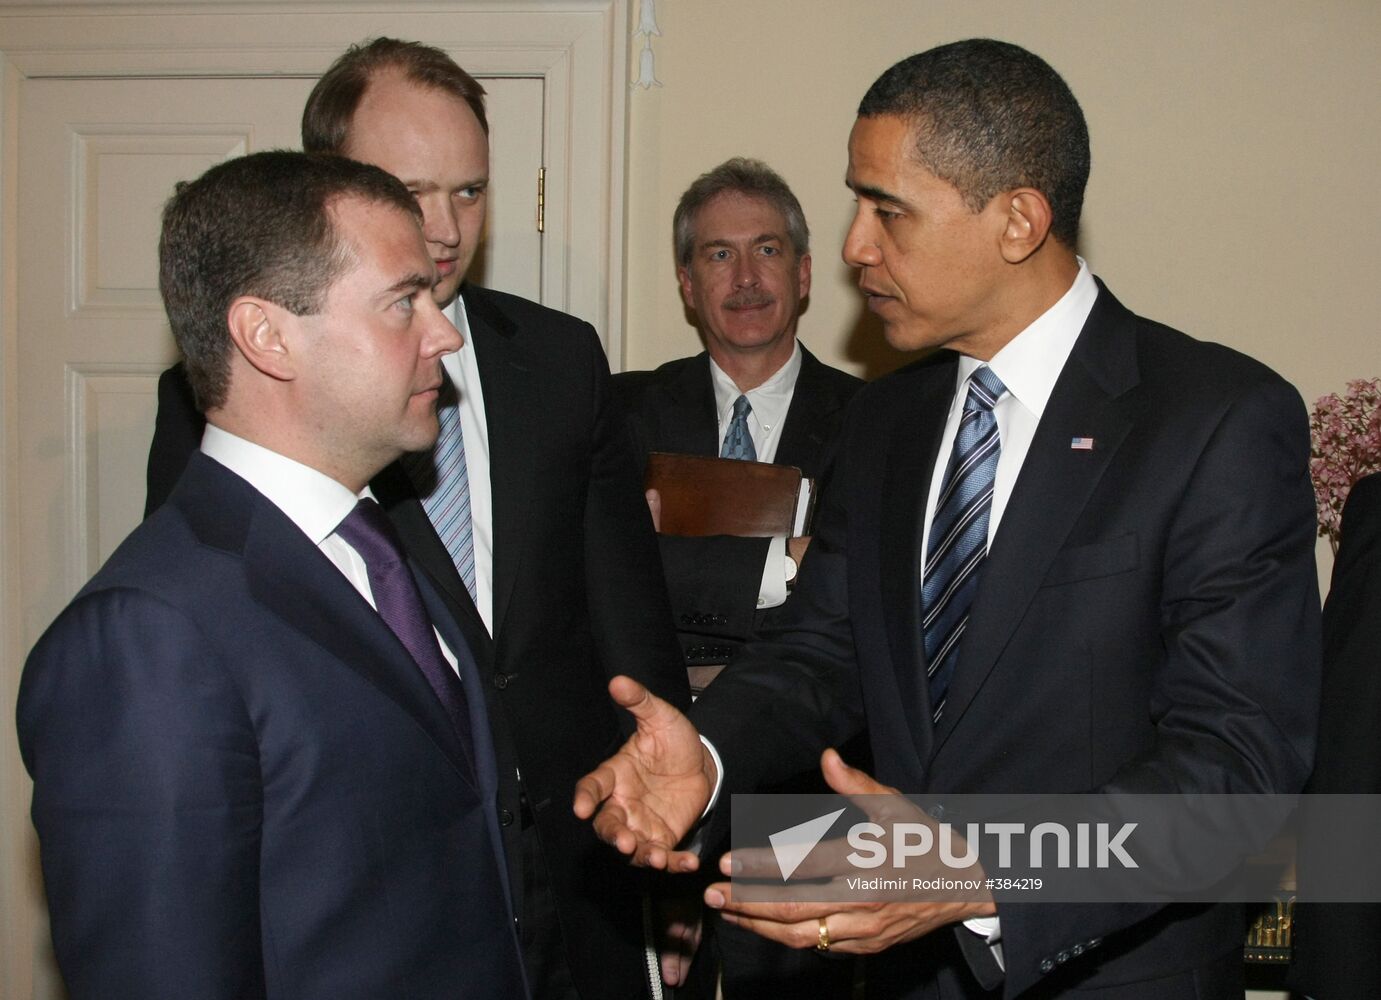 Dmitry Medvedev meets with Barack Obama